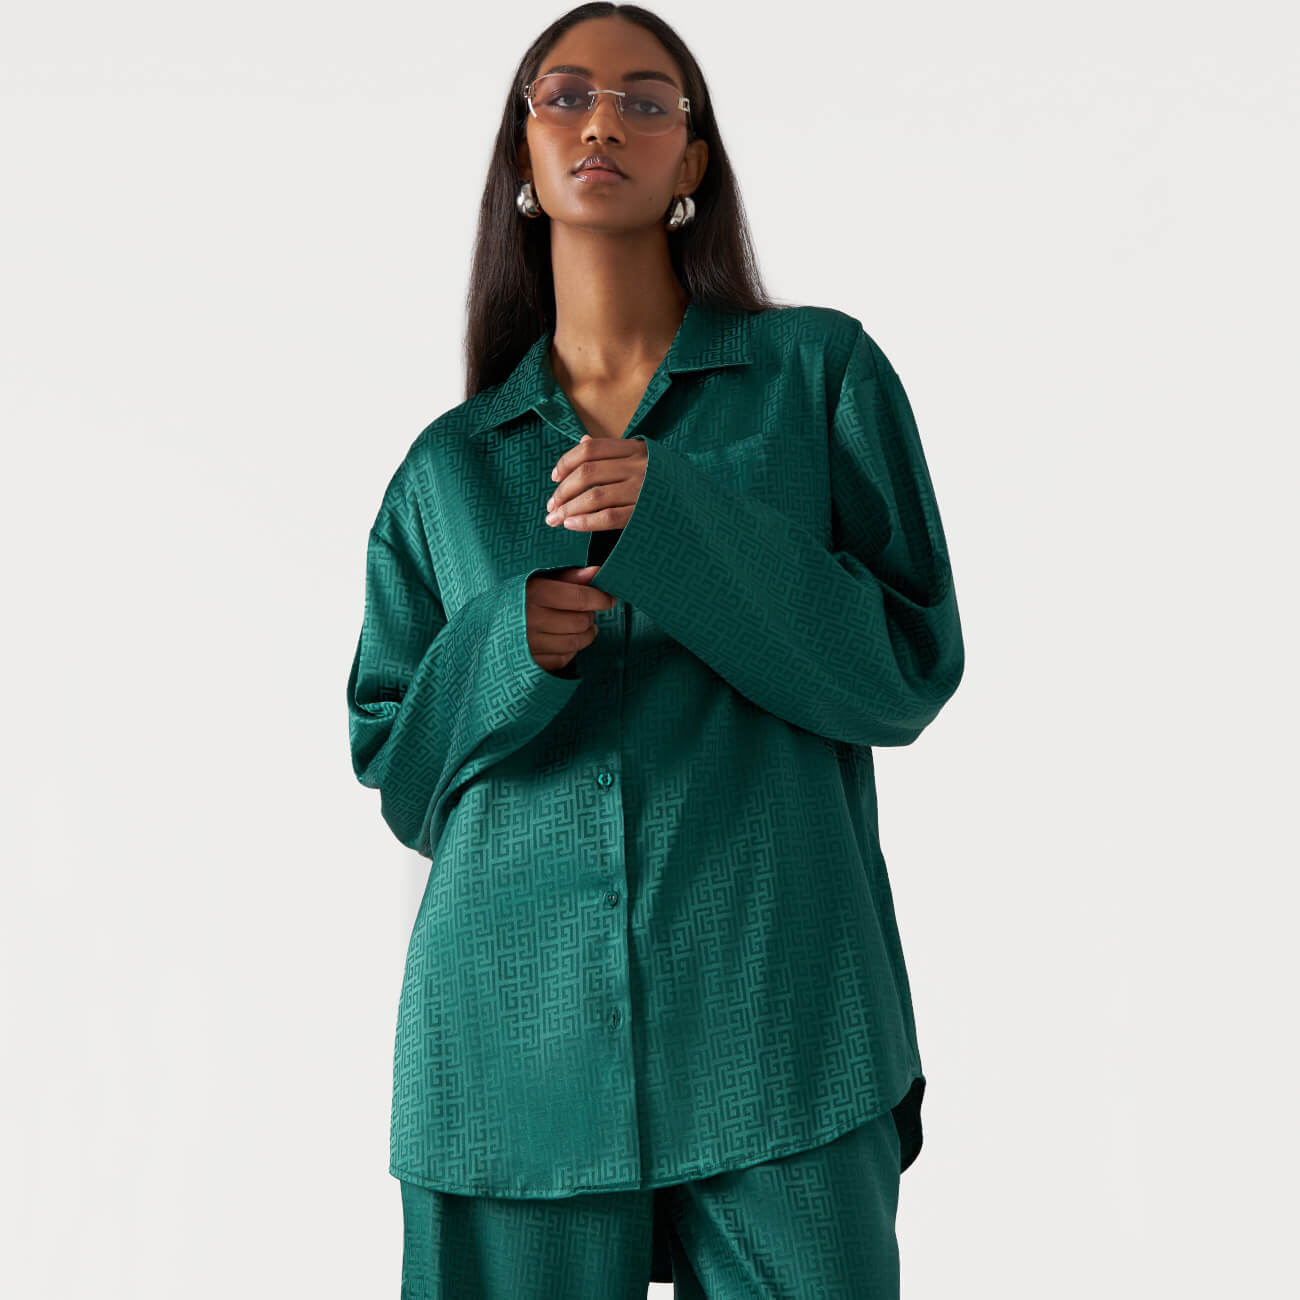 Рубашка женская, р. M, с длинным рукавом, полиэстер, зеленая, Жаккардовый узор, Agnia рубашка женская р m с длинным рукавом хлопок зеленая teona